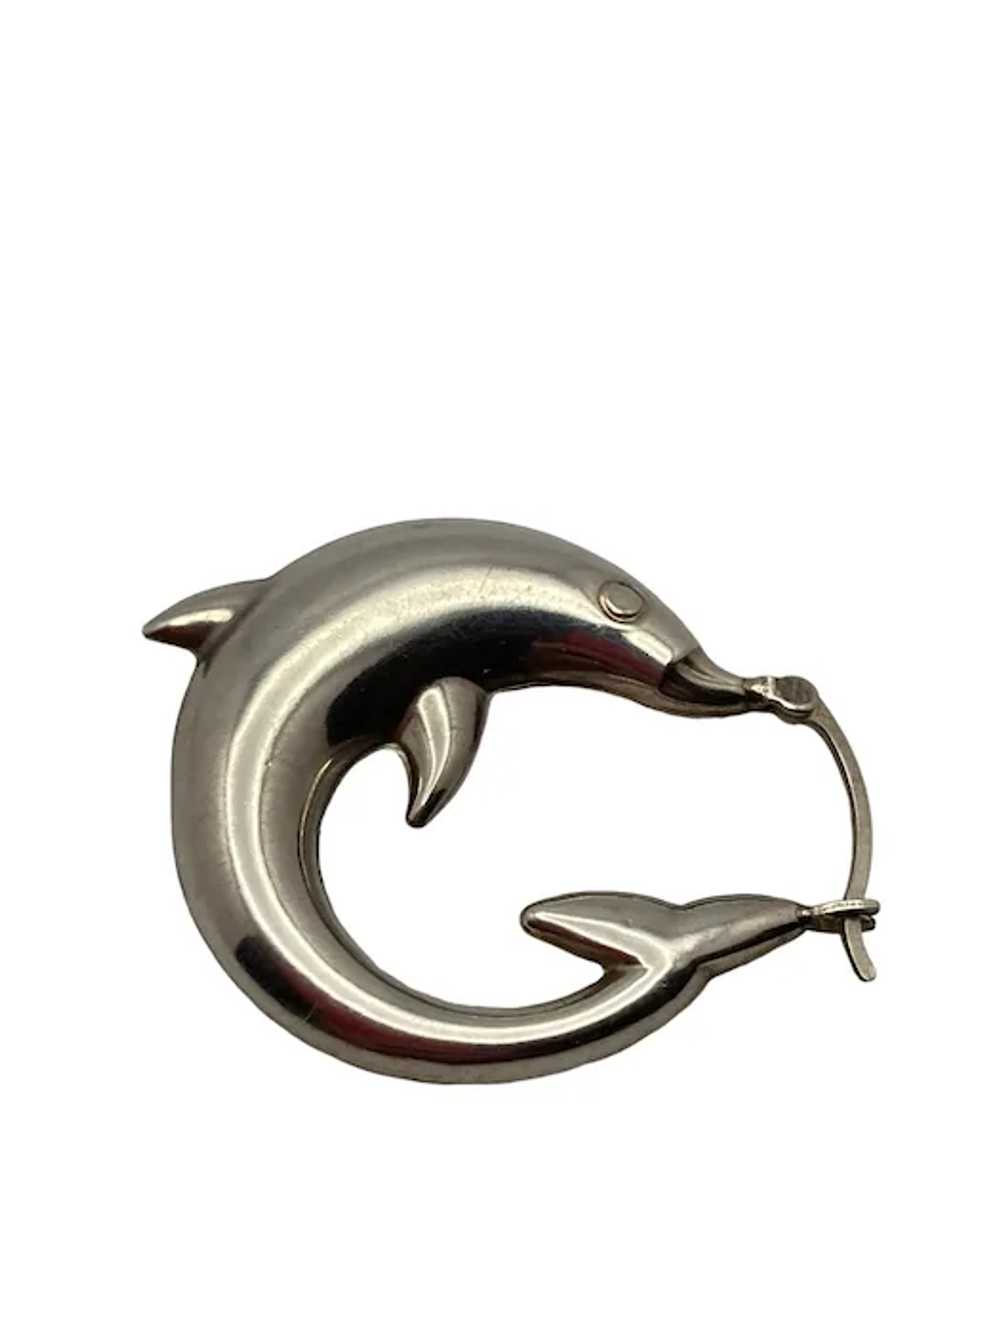 Pair of Sterling Silver Dolphin Hoop Earrings - image 9